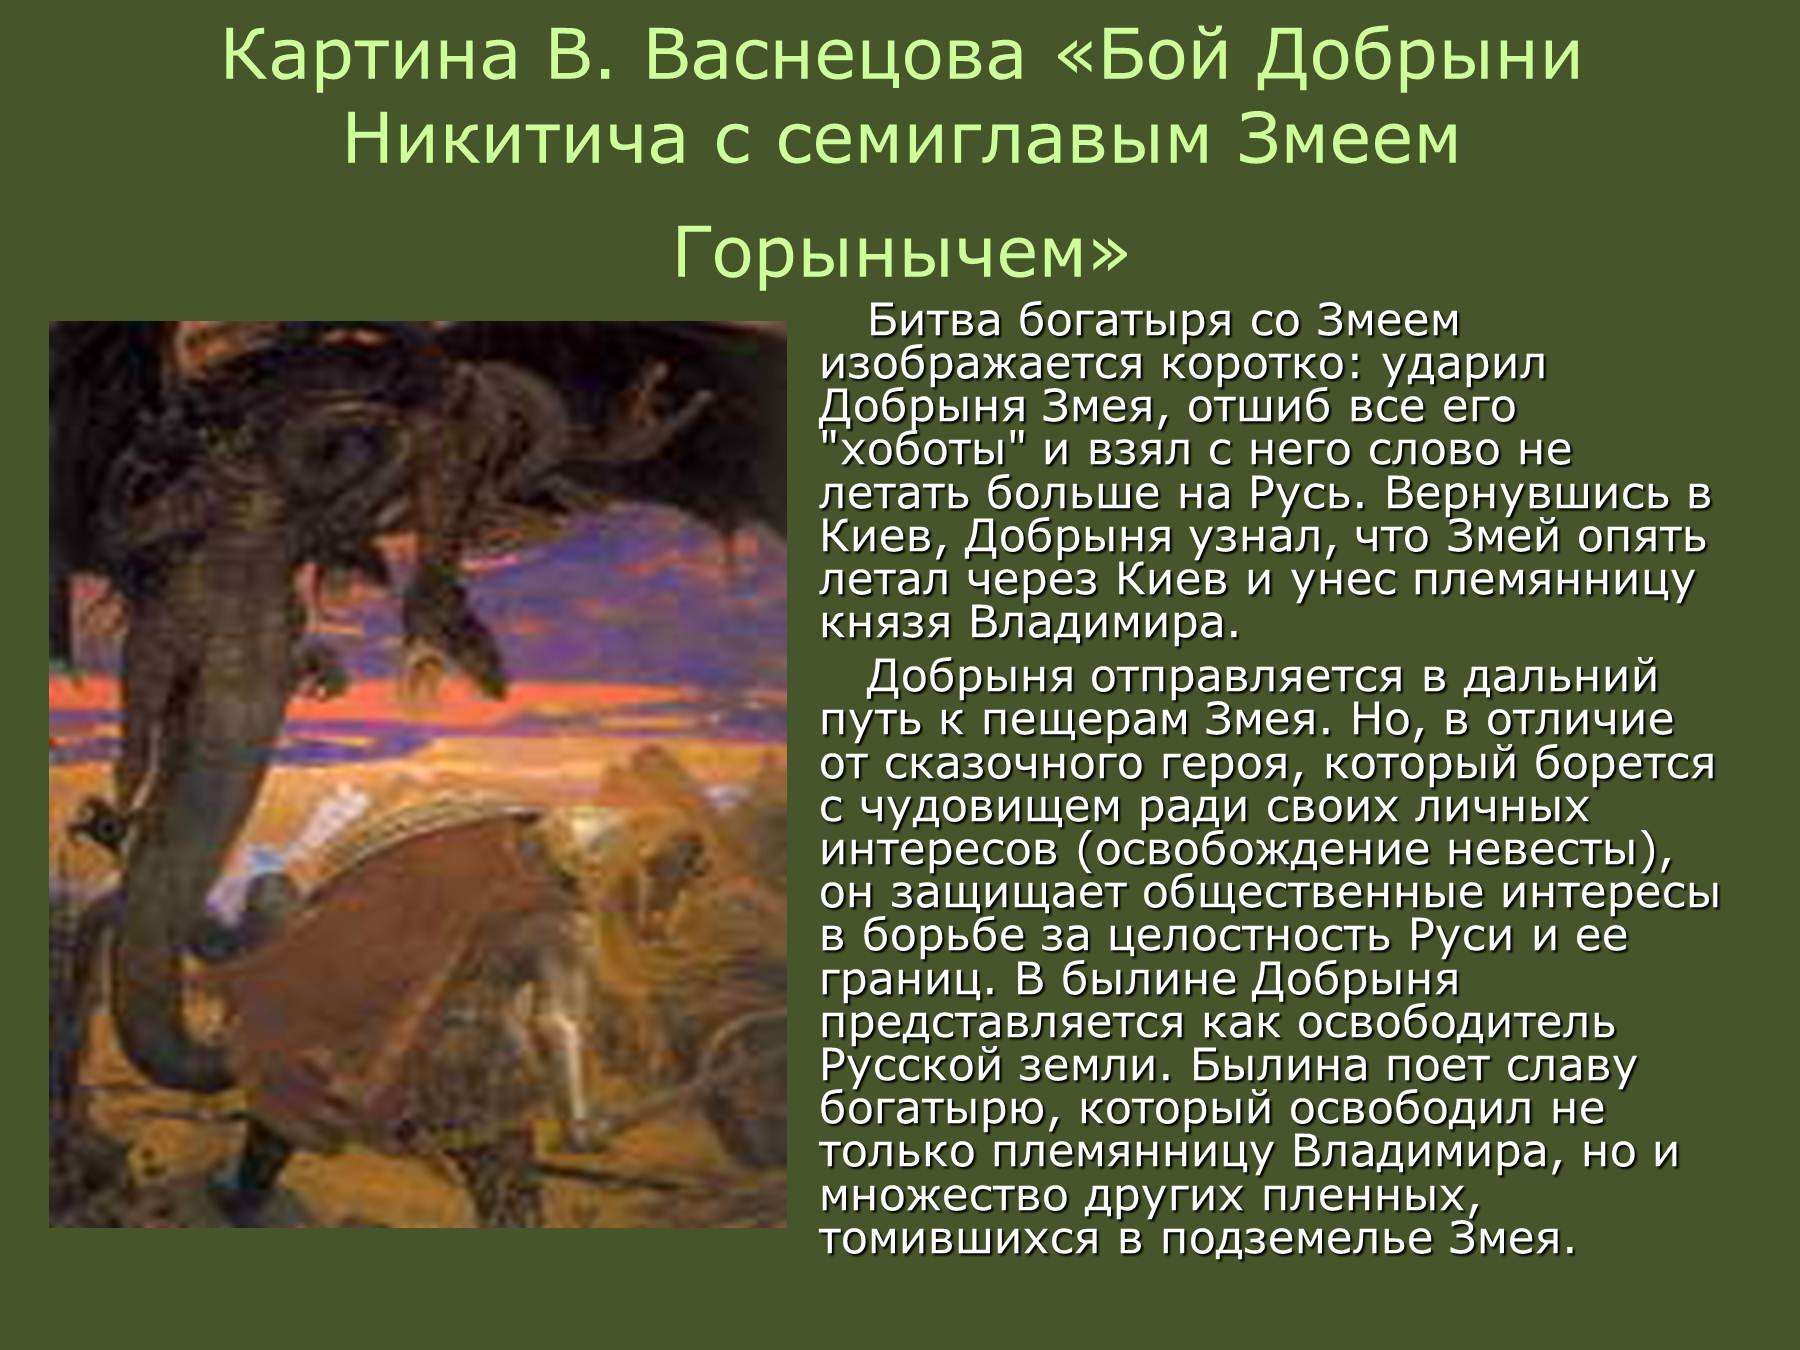 В. М. Васнецов «бой Добрыни Никитича с Семиглавым змеем Горынычем»